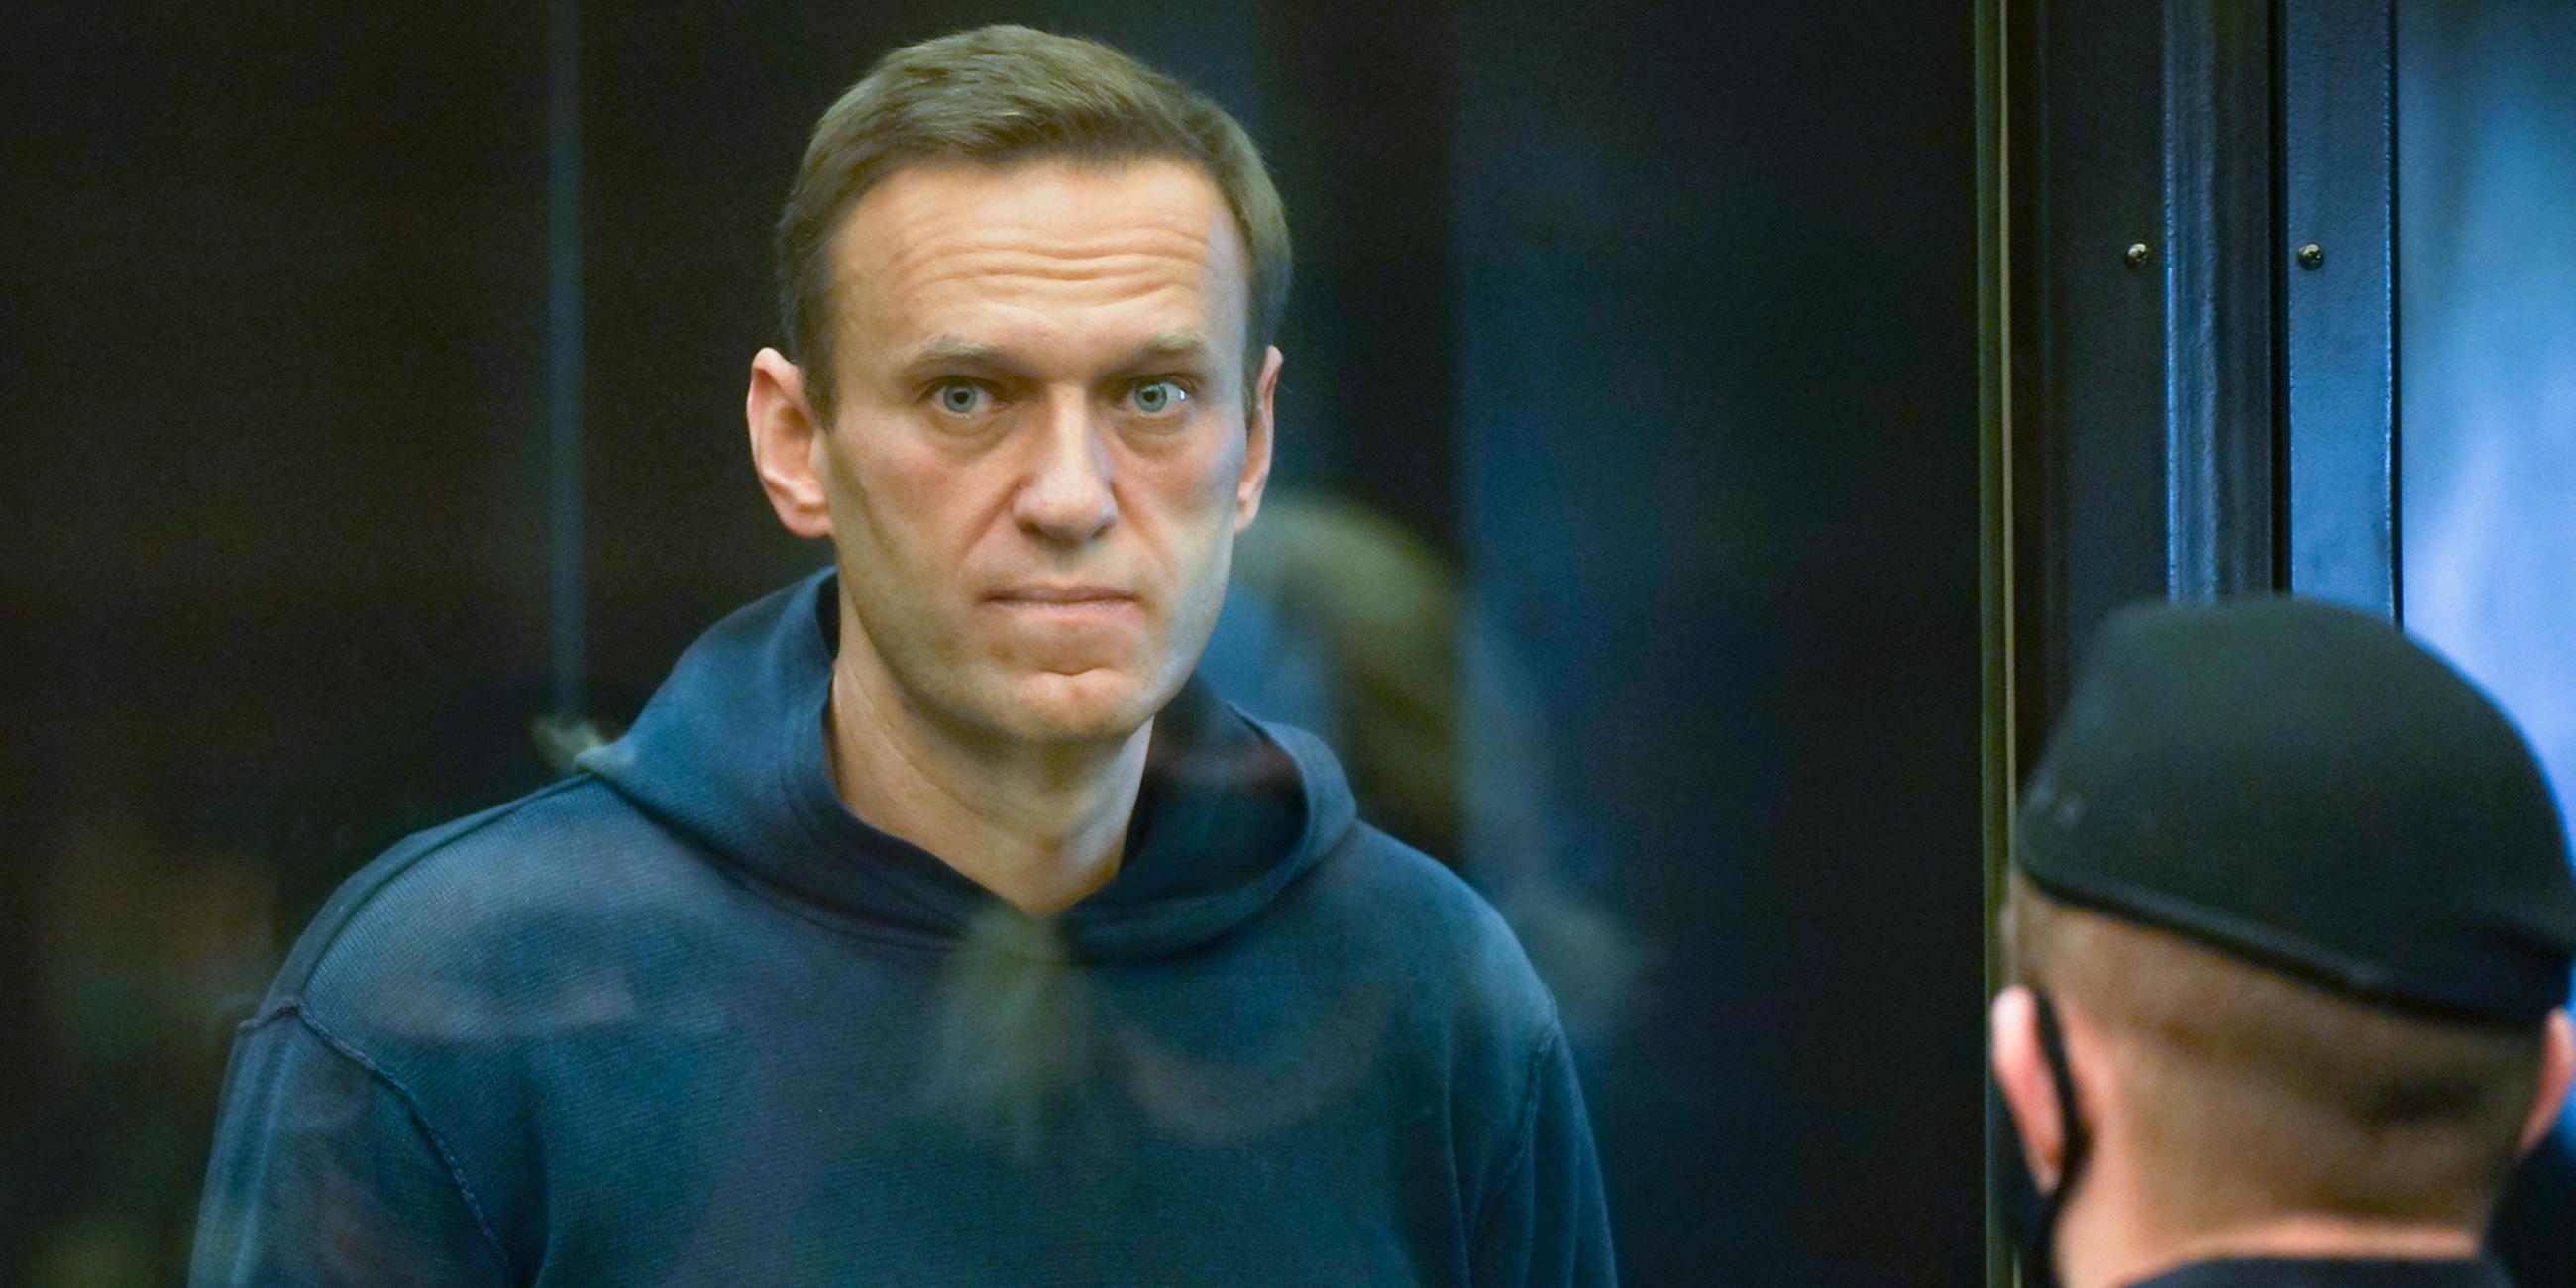 Der russische Oppositionsführer Alexej Nawalny steht im Gericht im Käfig während einer Anhörung. Vor ihm ein Polizist.